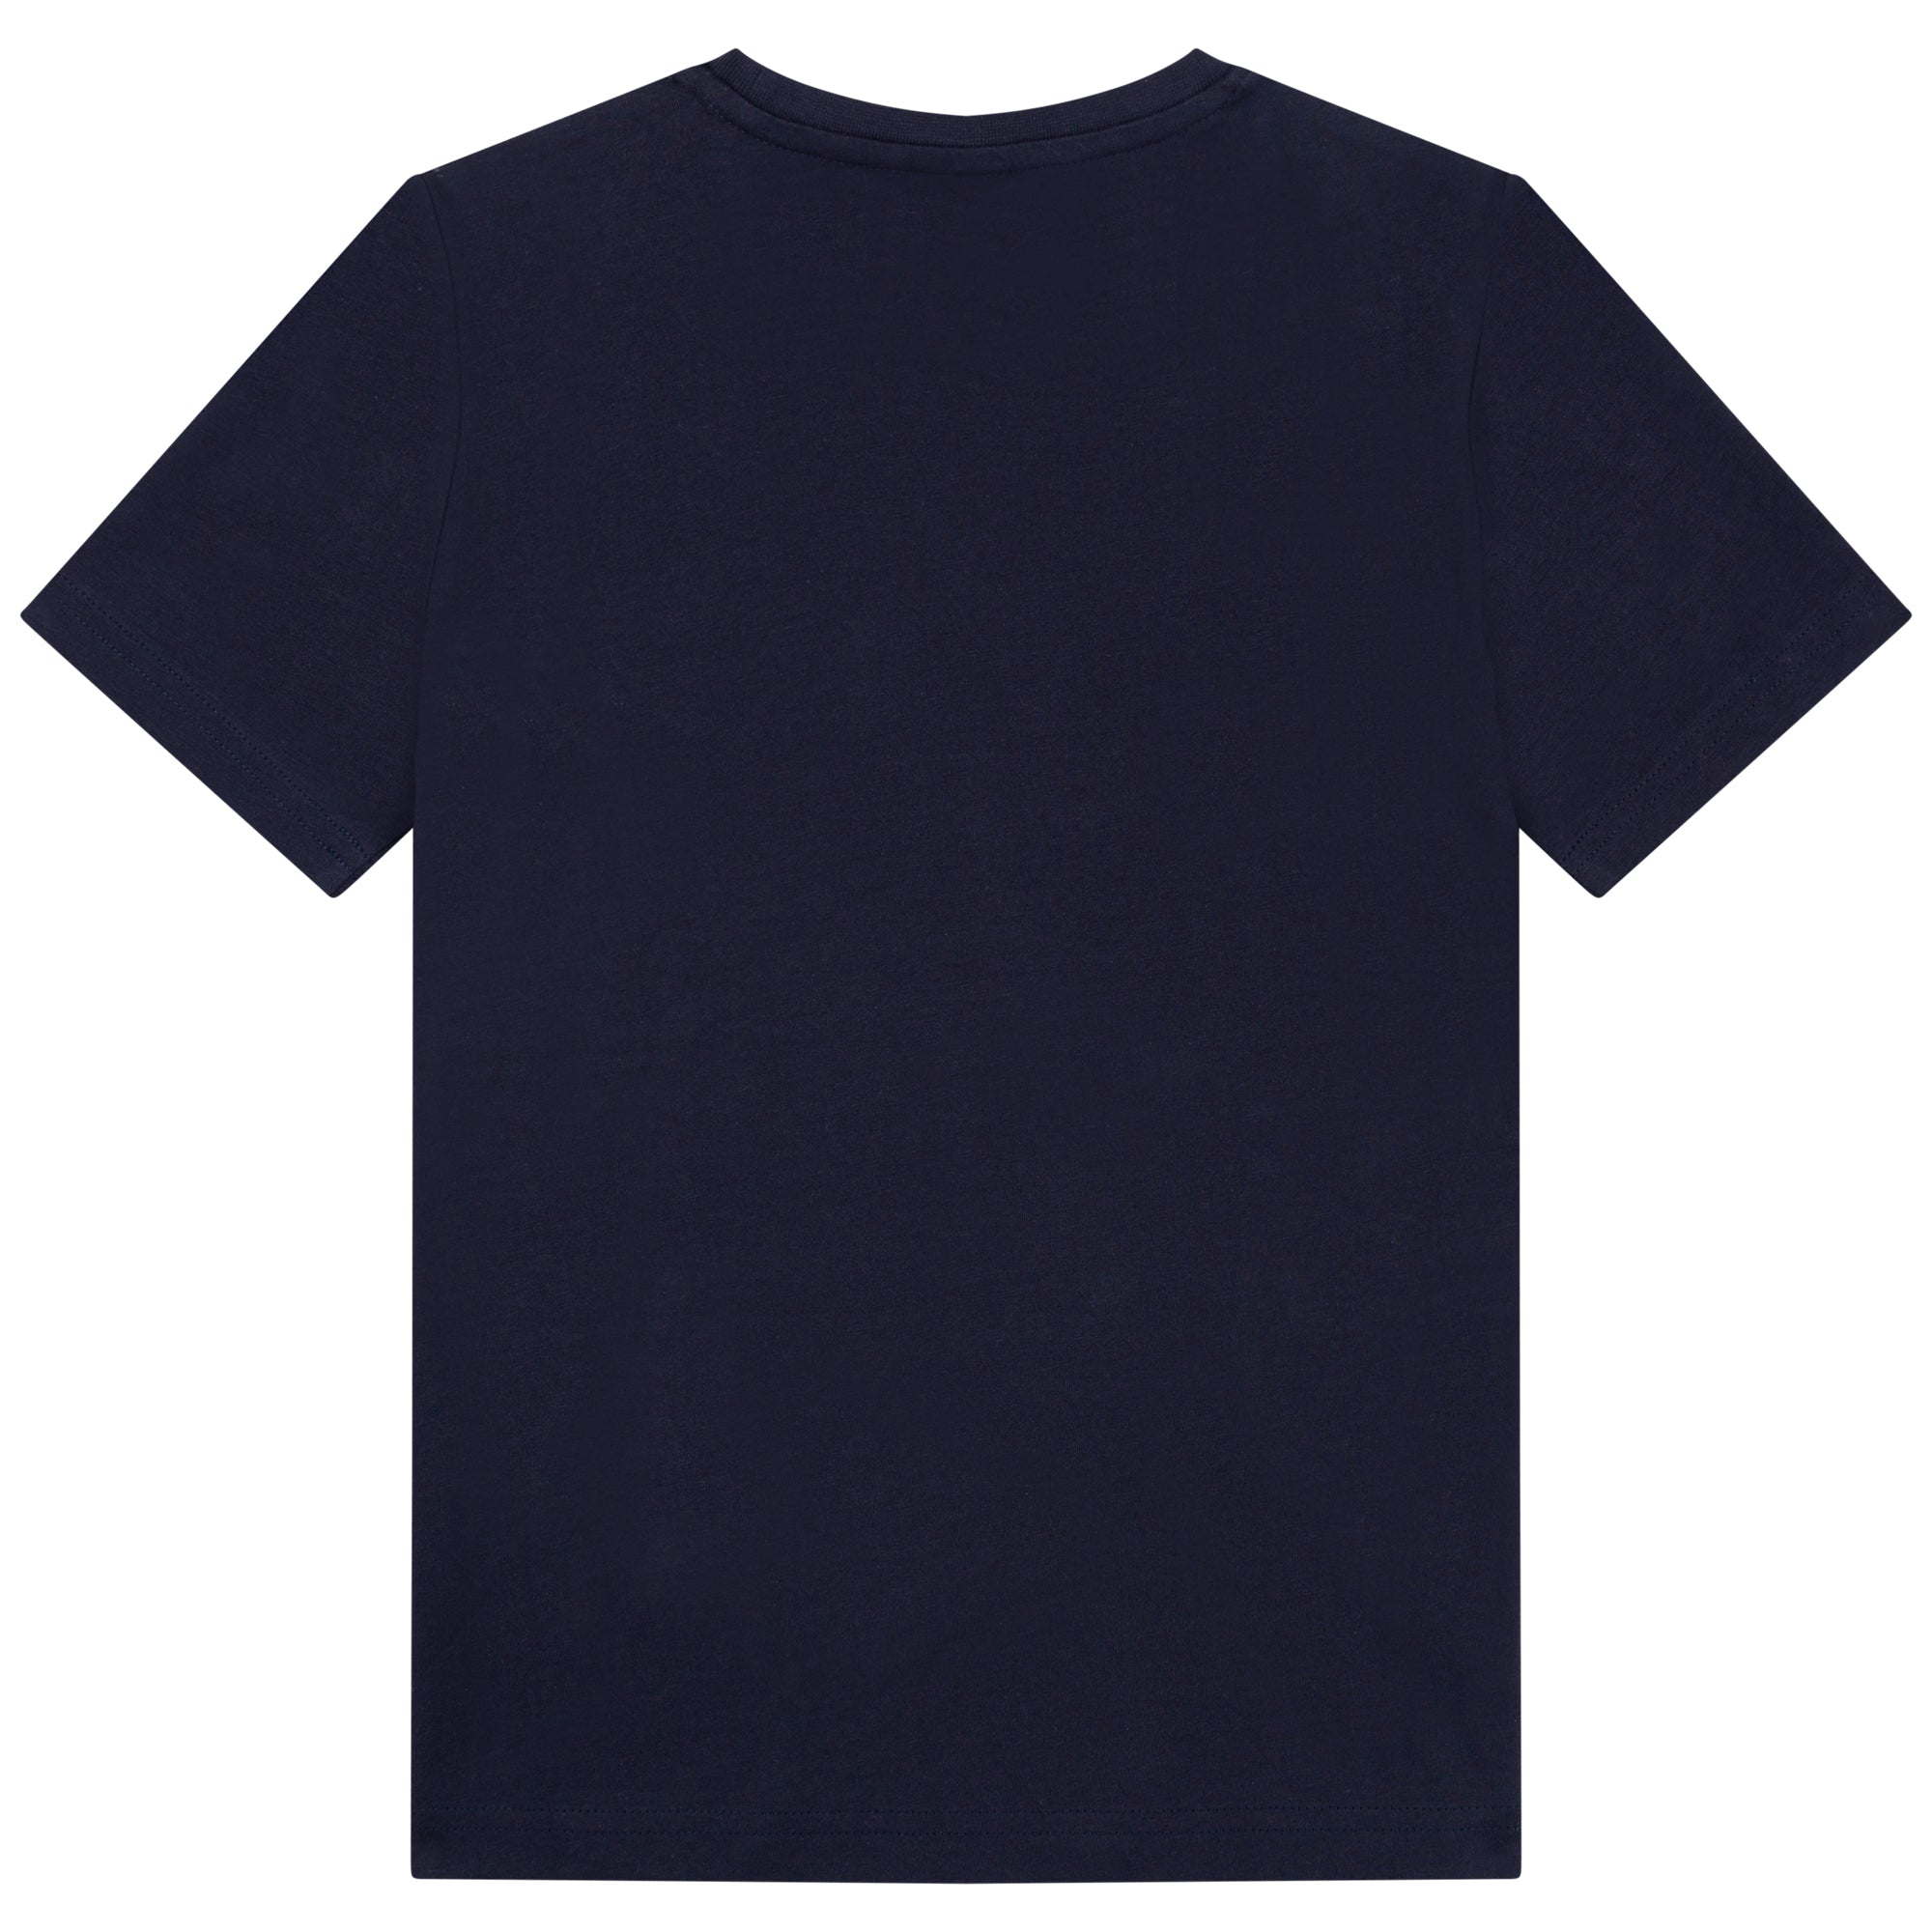 Boys & Girls Navy Printing Cotton T-Shirt